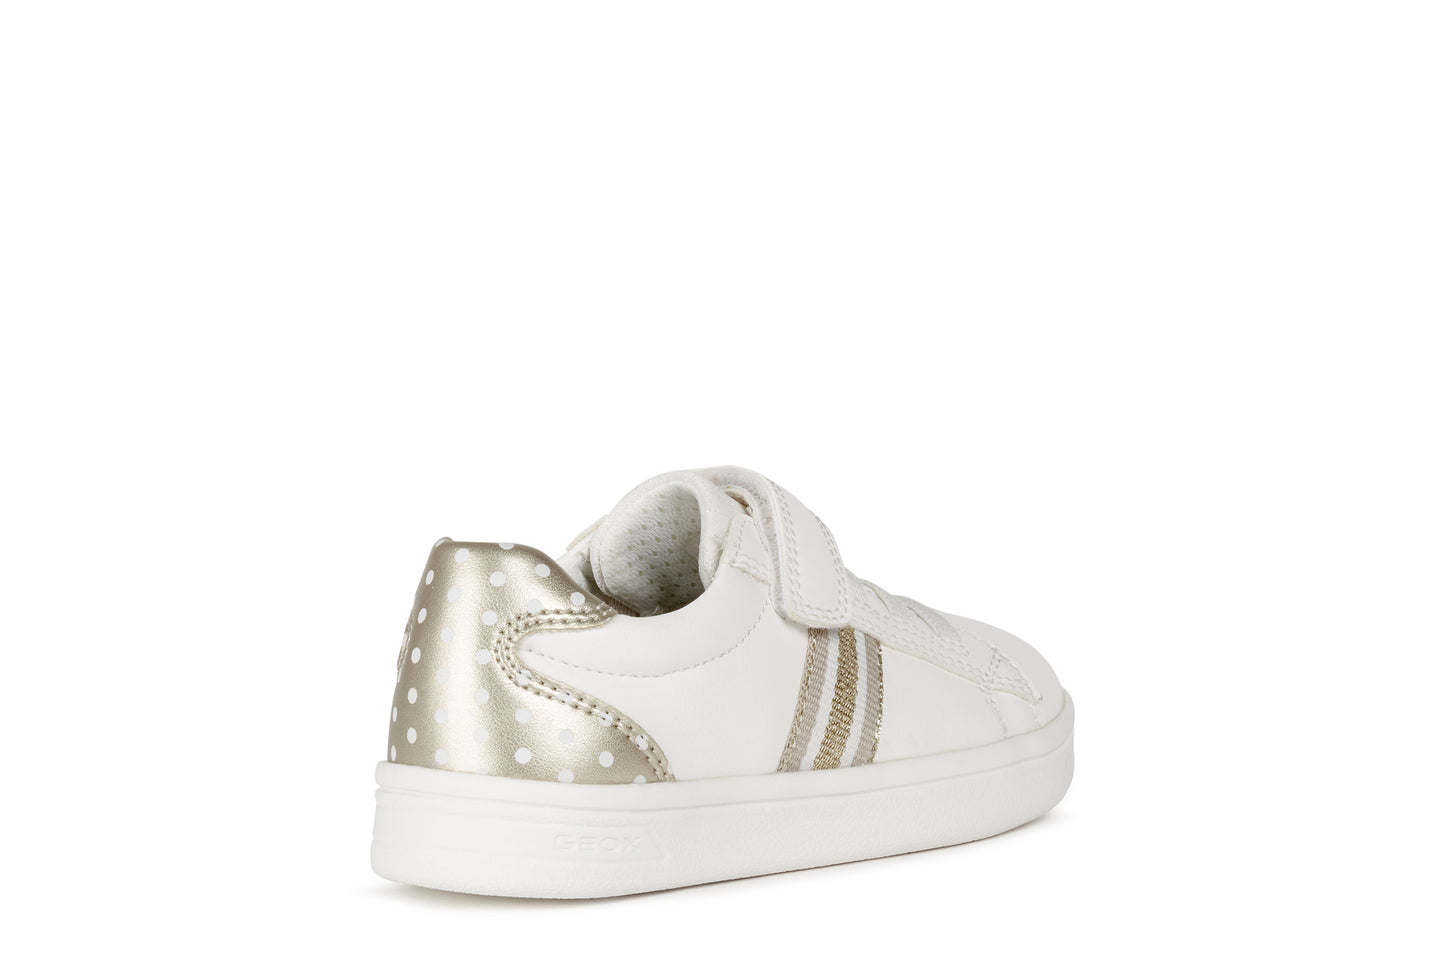 DJ Rock Girl's Sneaker in White/Gold